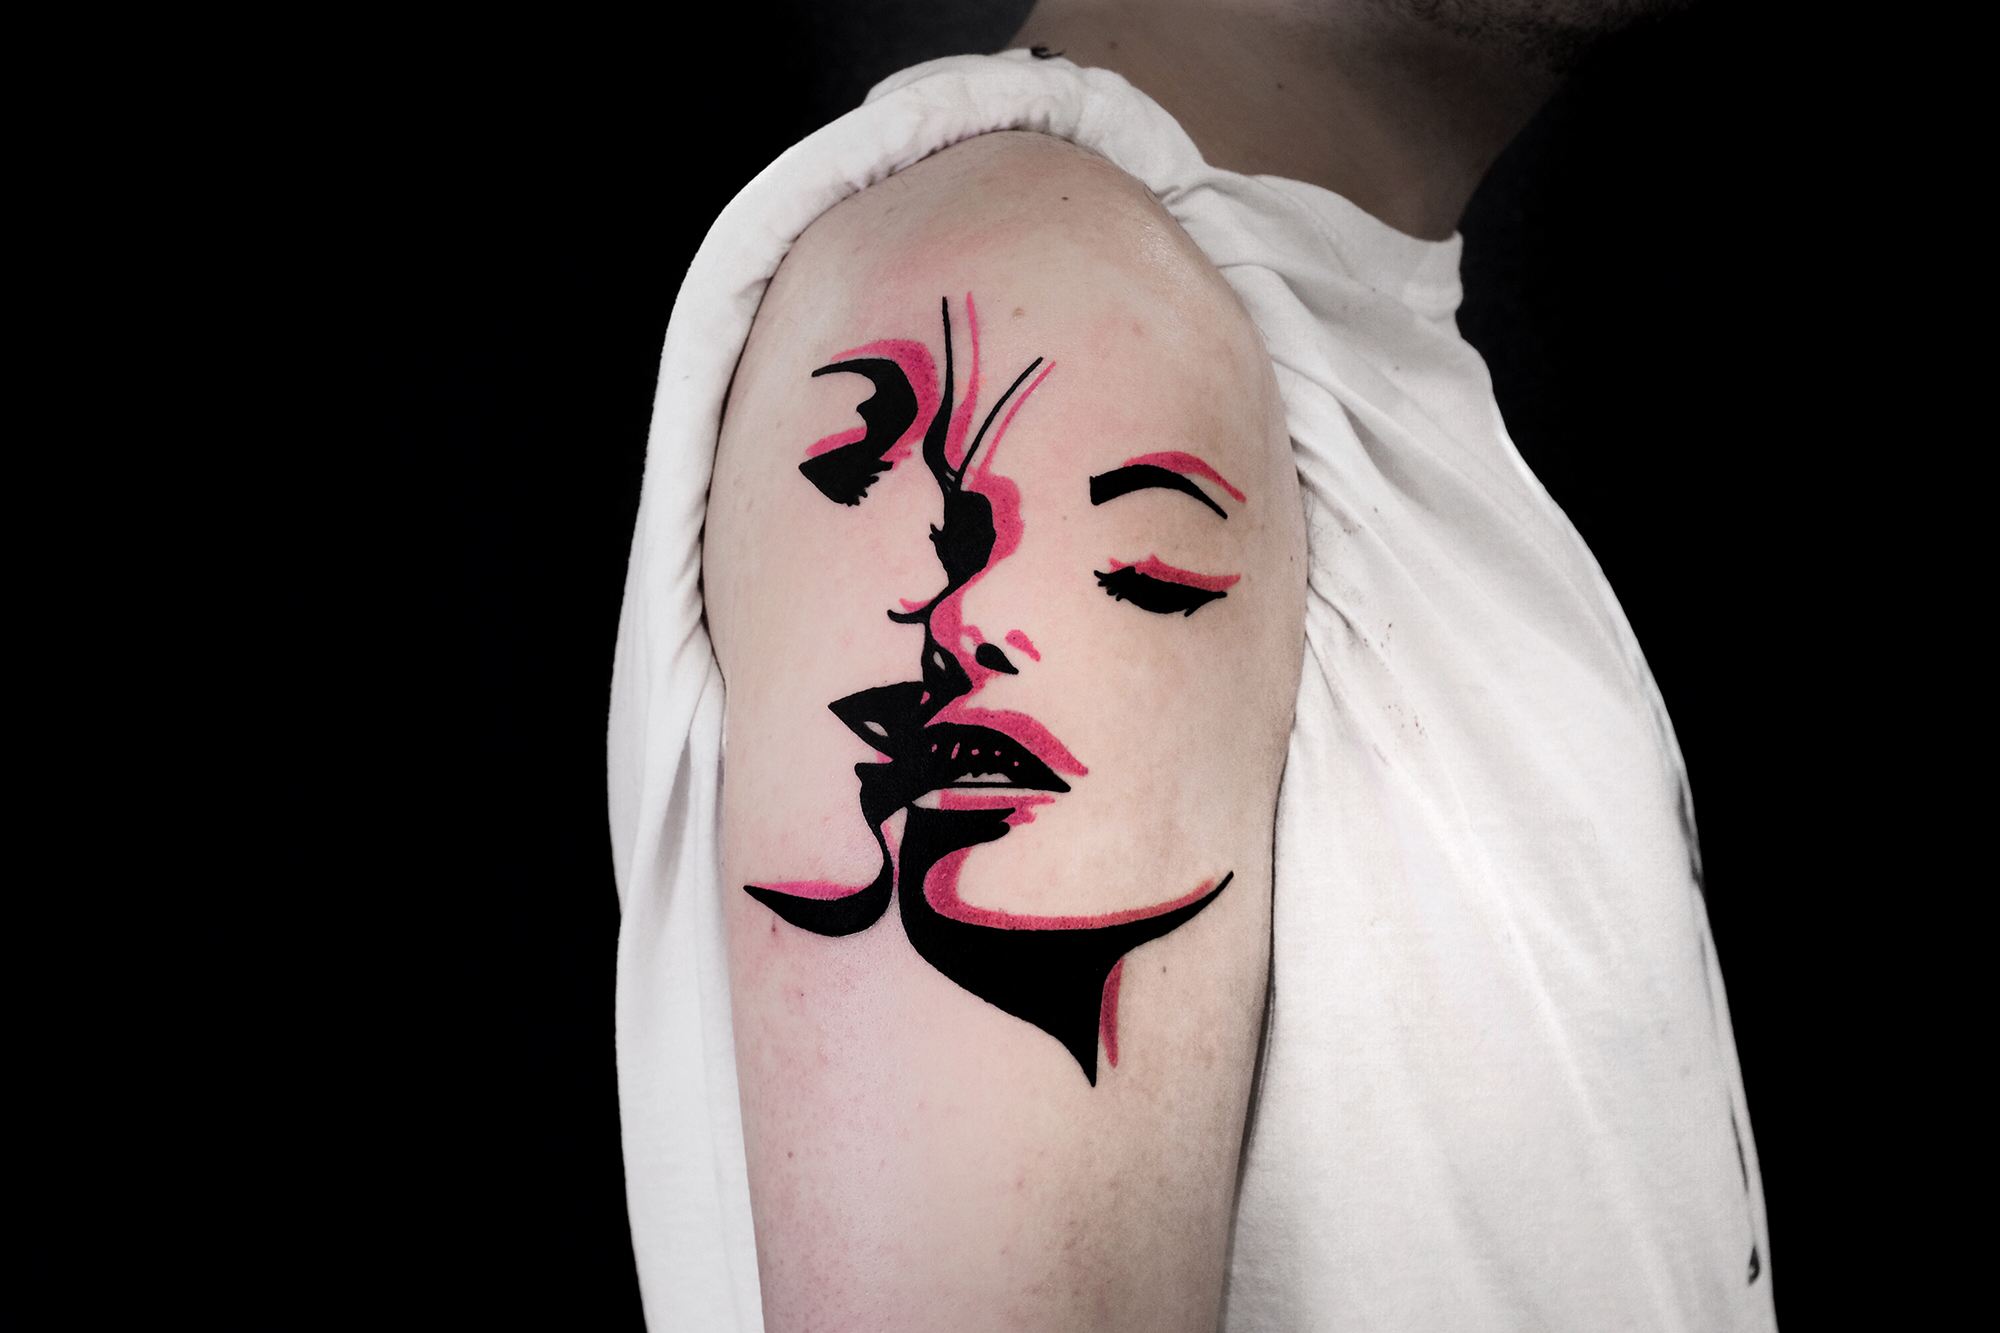 The Wolf Rosario, Rosario Sortino - faces tattoo